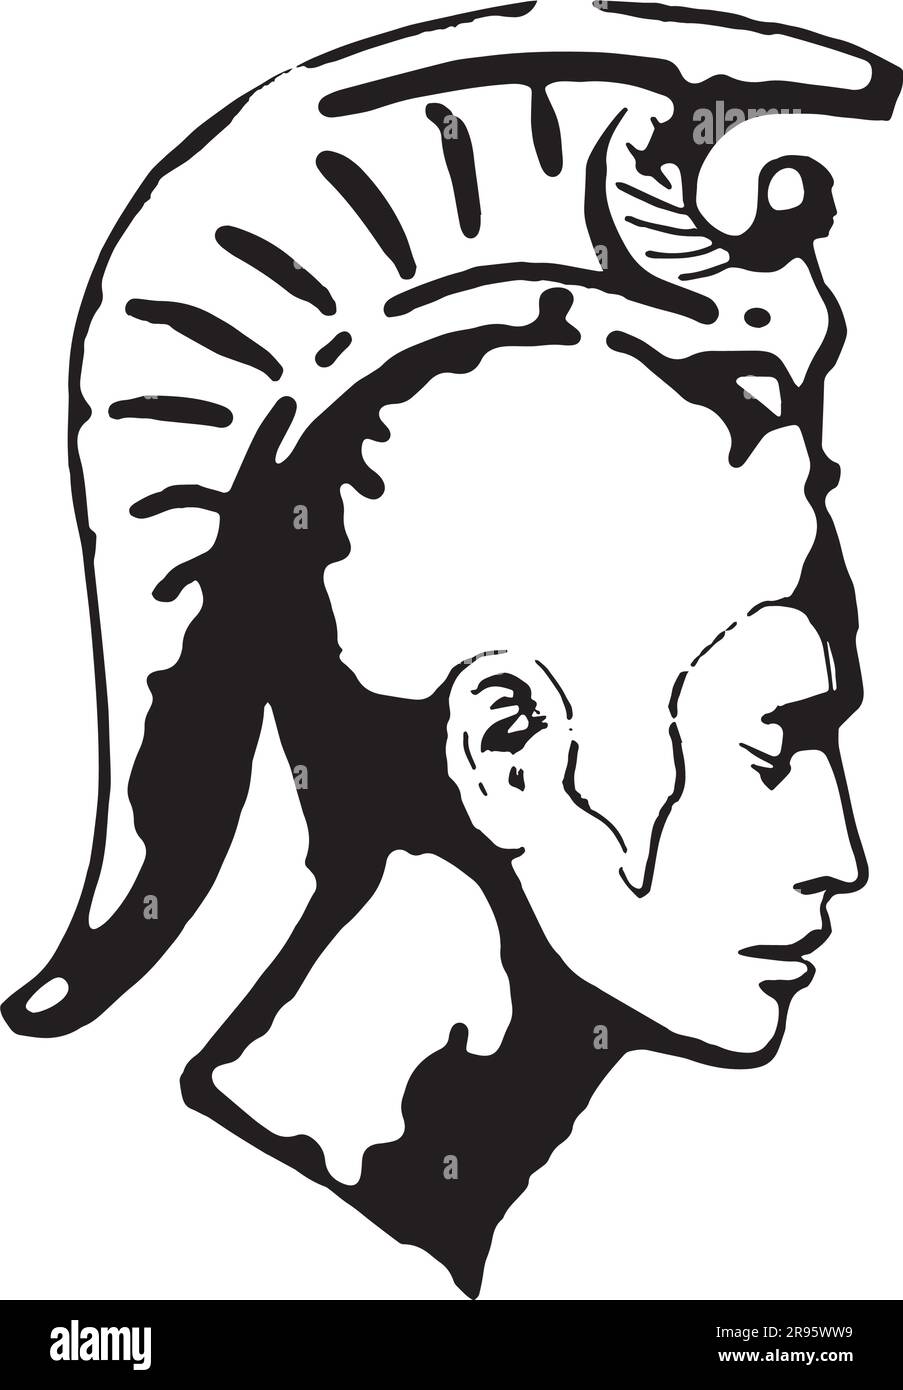 Korinthisches oder spartanisches Helmprofil – Schwarzweiß-Kunstwerke Stock Vektor